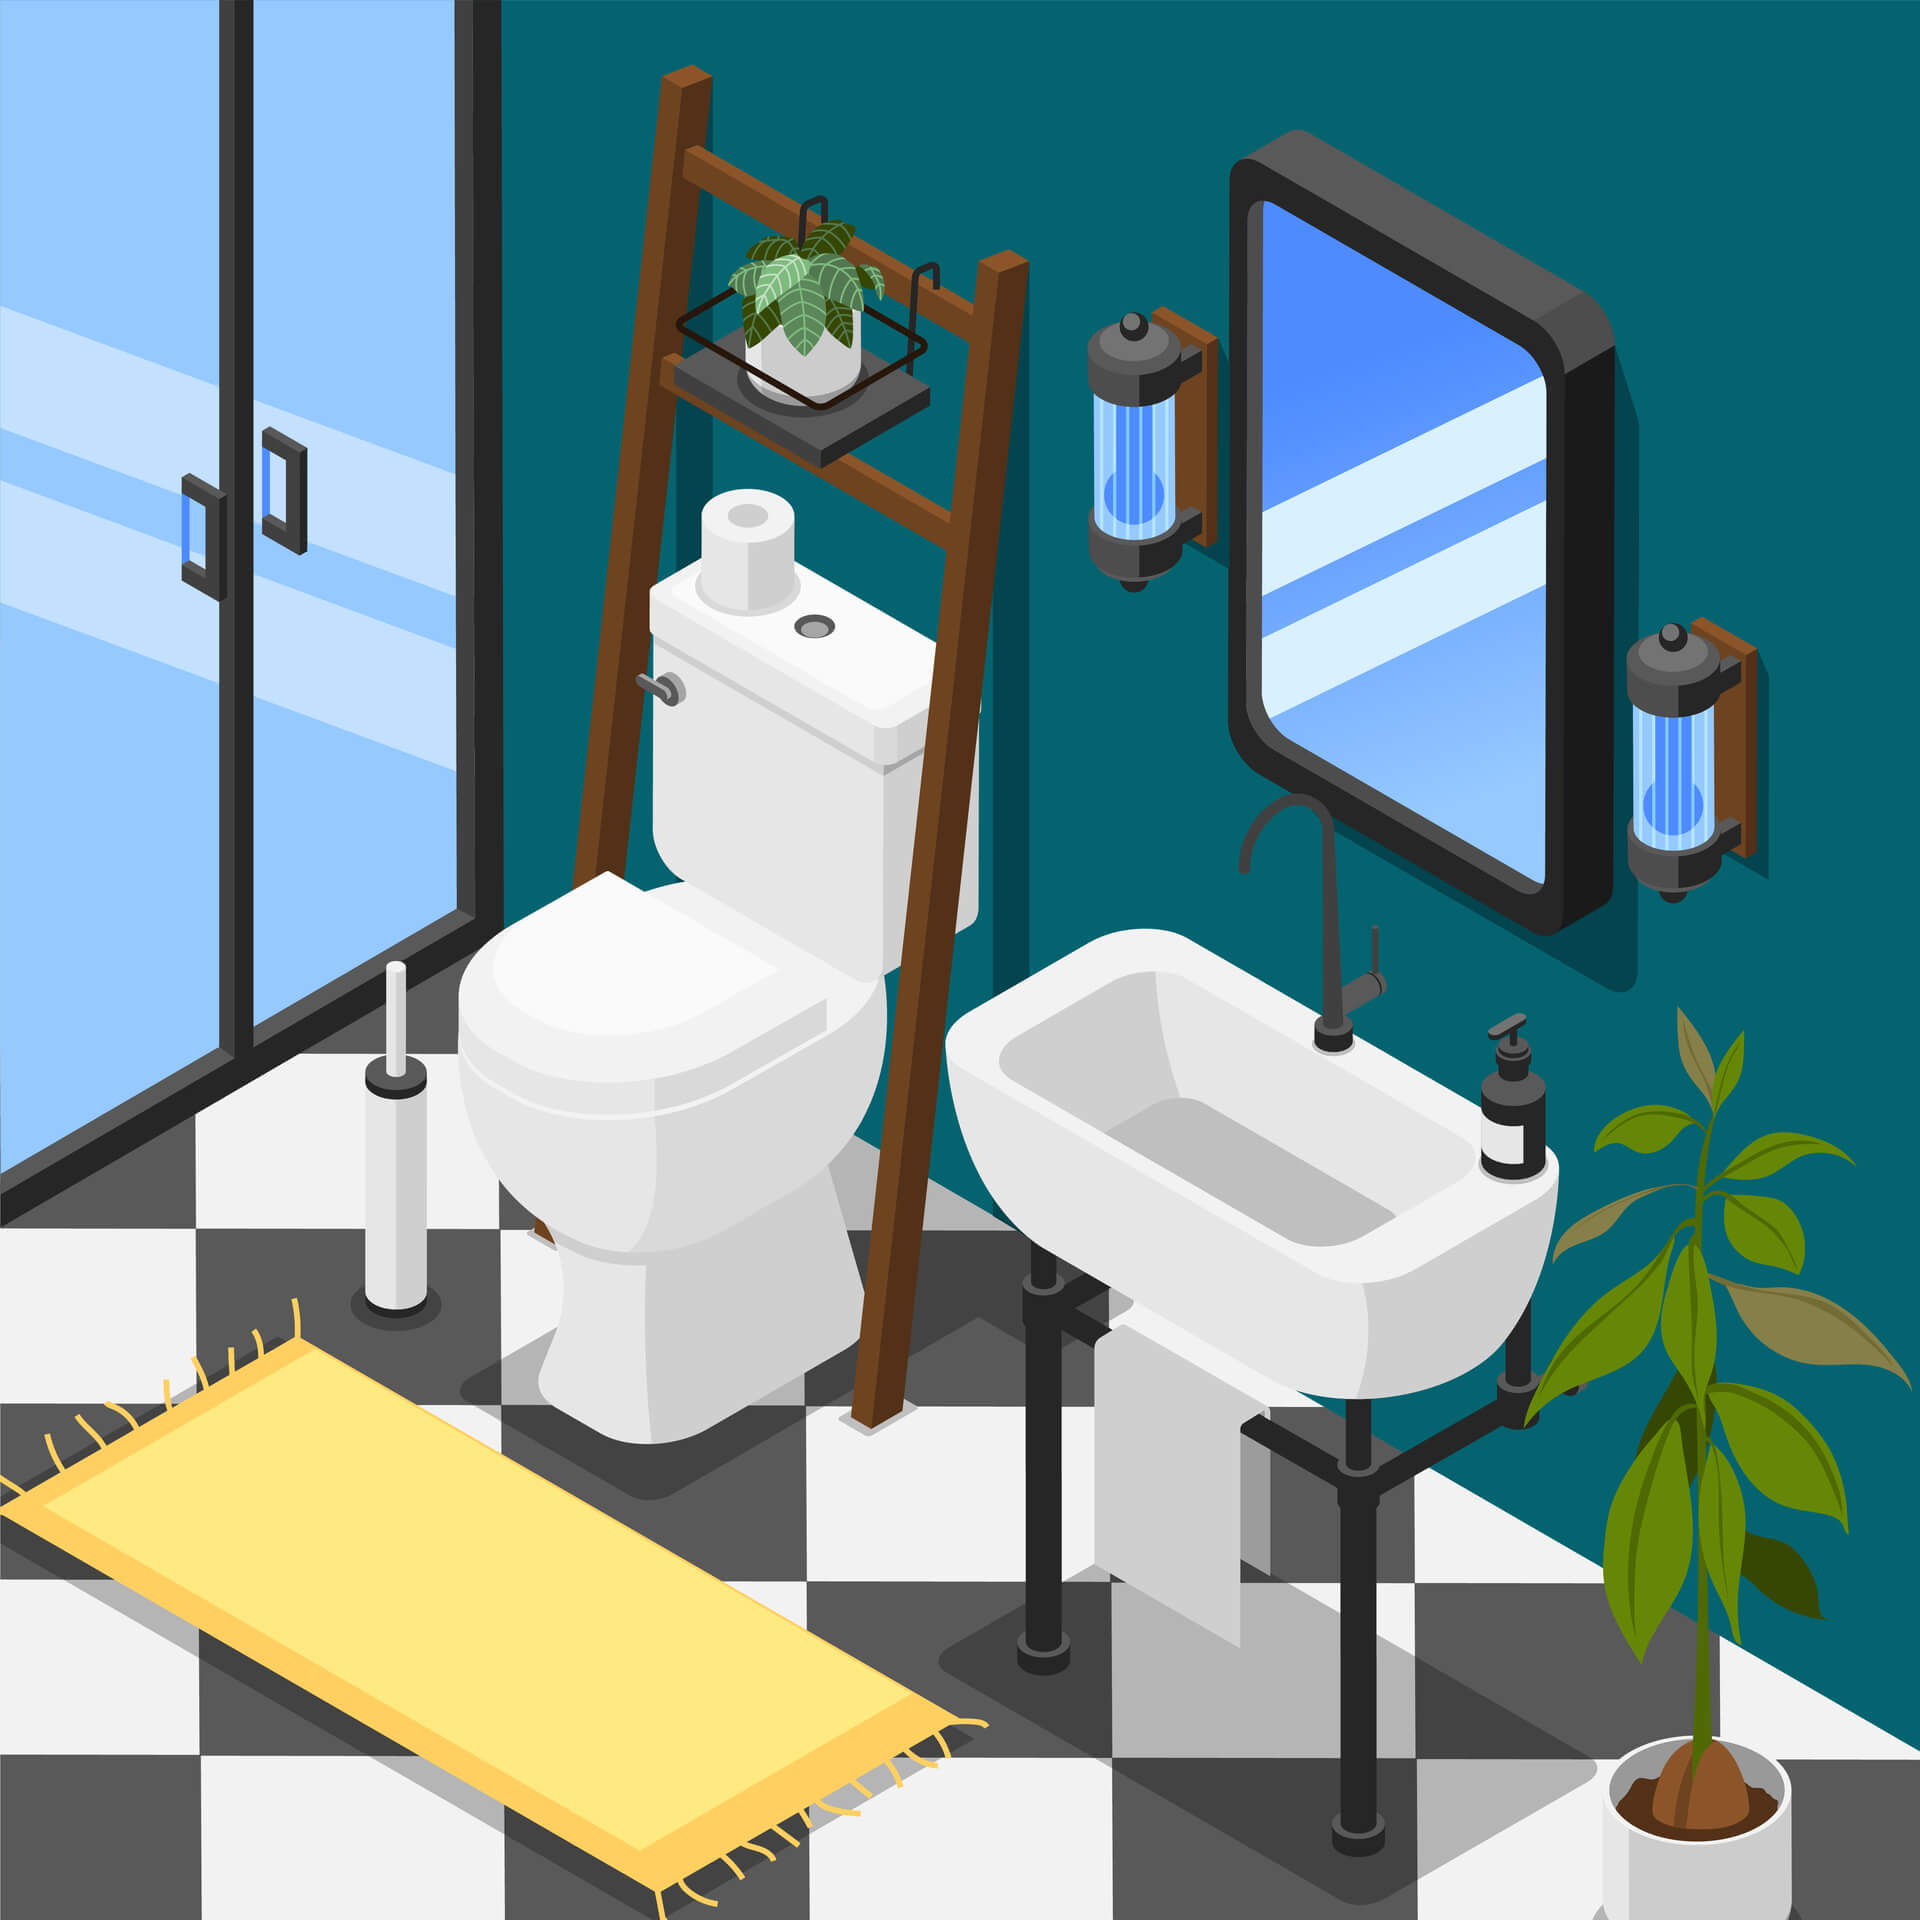 Installation des équipements de salle de bain - baignoire, douche